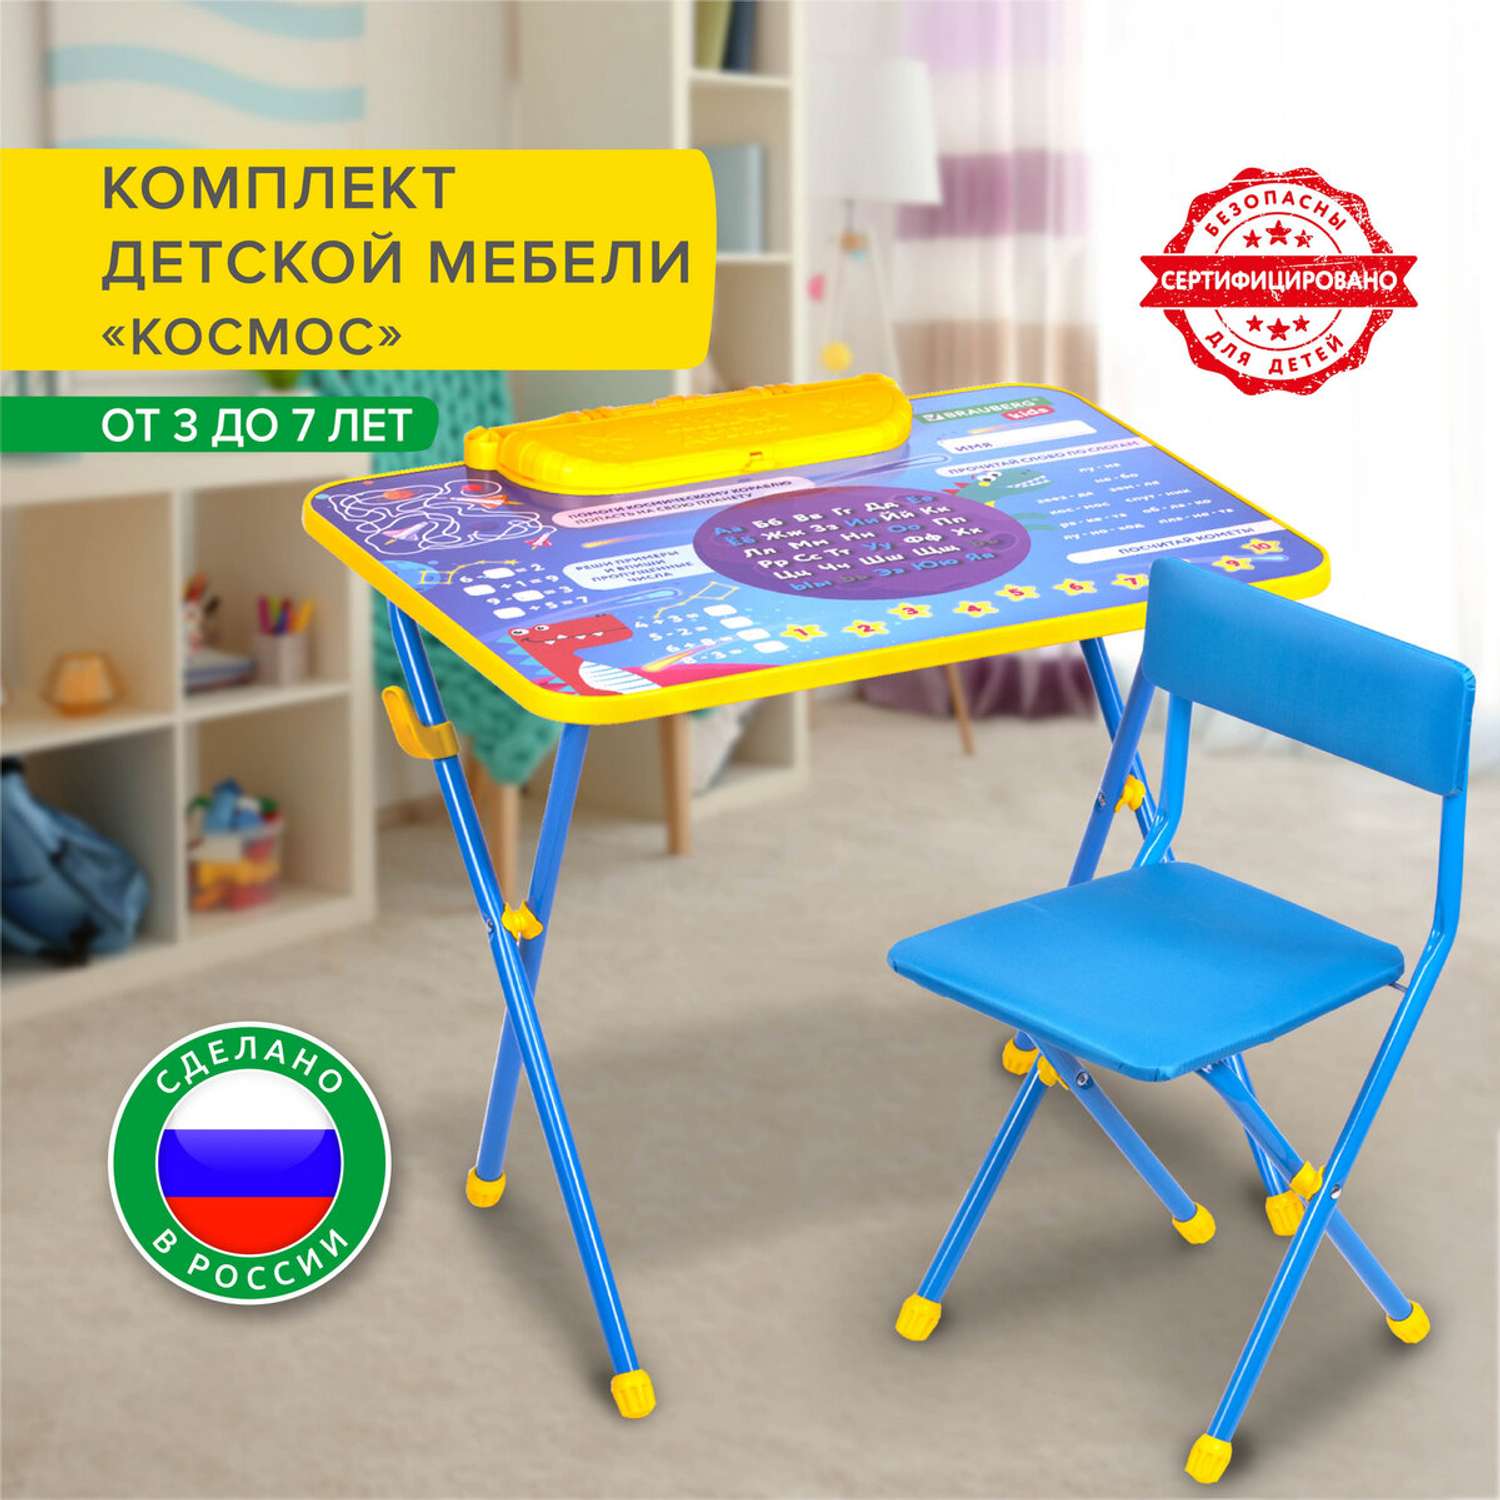 Детские столы и стульчики, детская мебель на PAMPIK бесплатная доставка